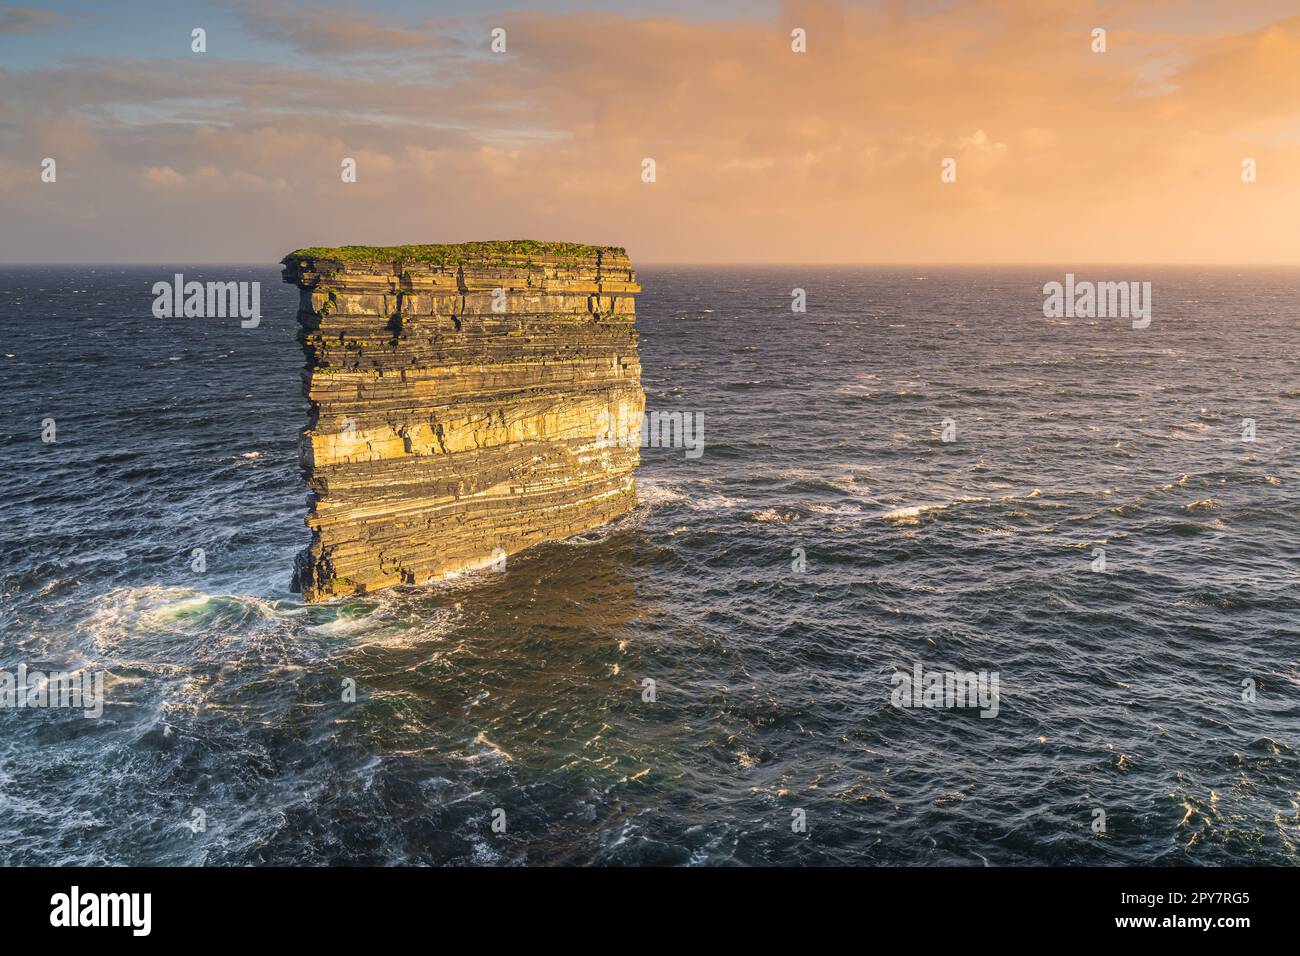 Downpatrick Head pile de mer illuminée par le lever du soleil, debout dans l'océan Atlantique, Irlande Banque D'Images